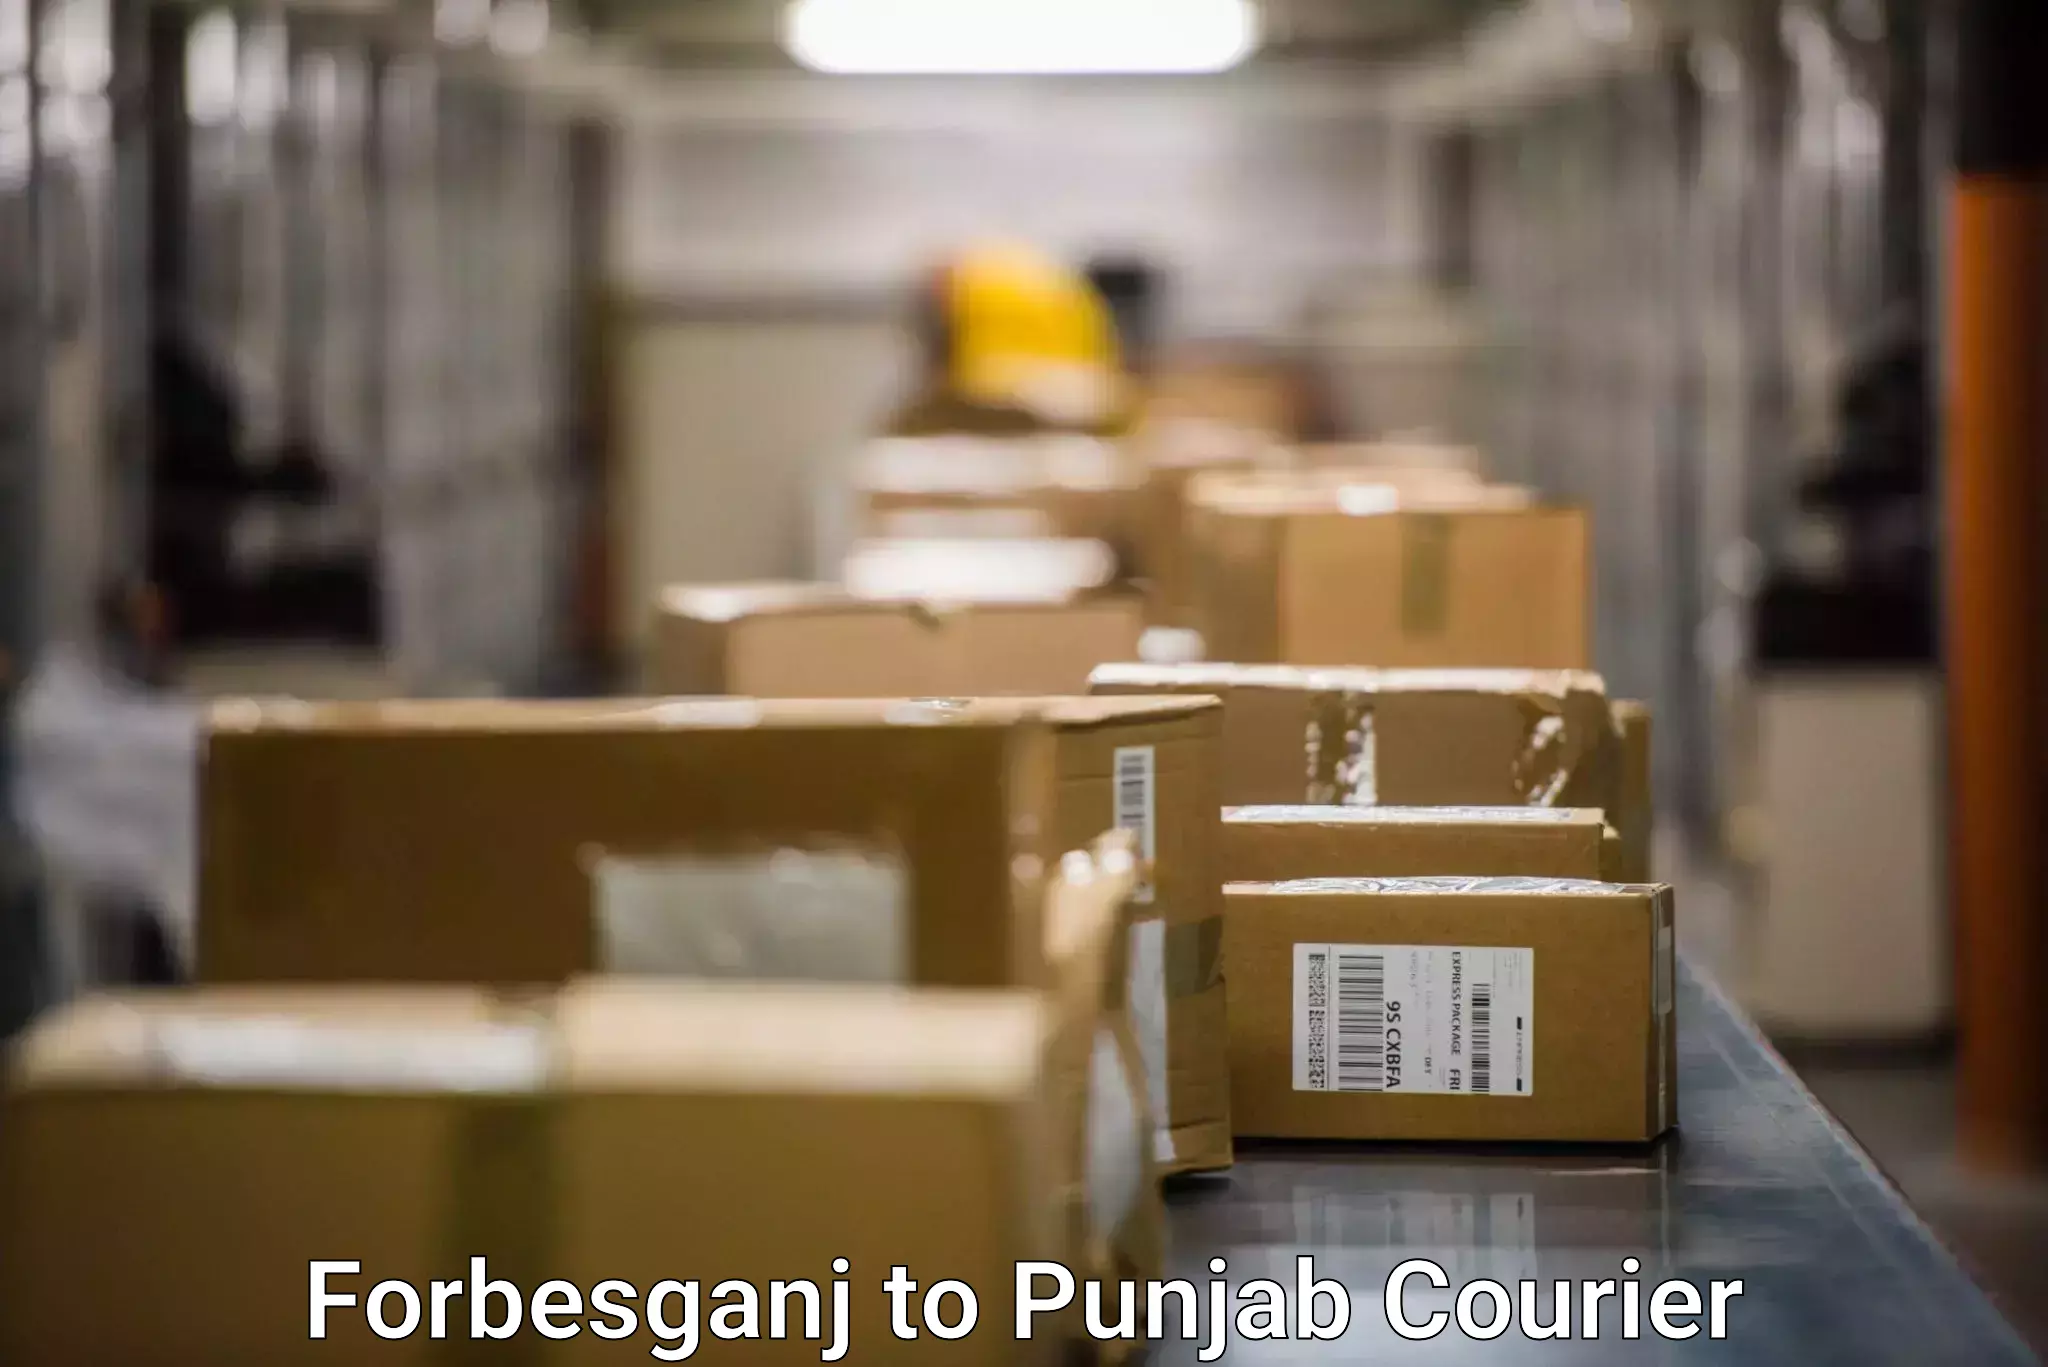 Advanced delivery network Forbesganj to Ludhiana